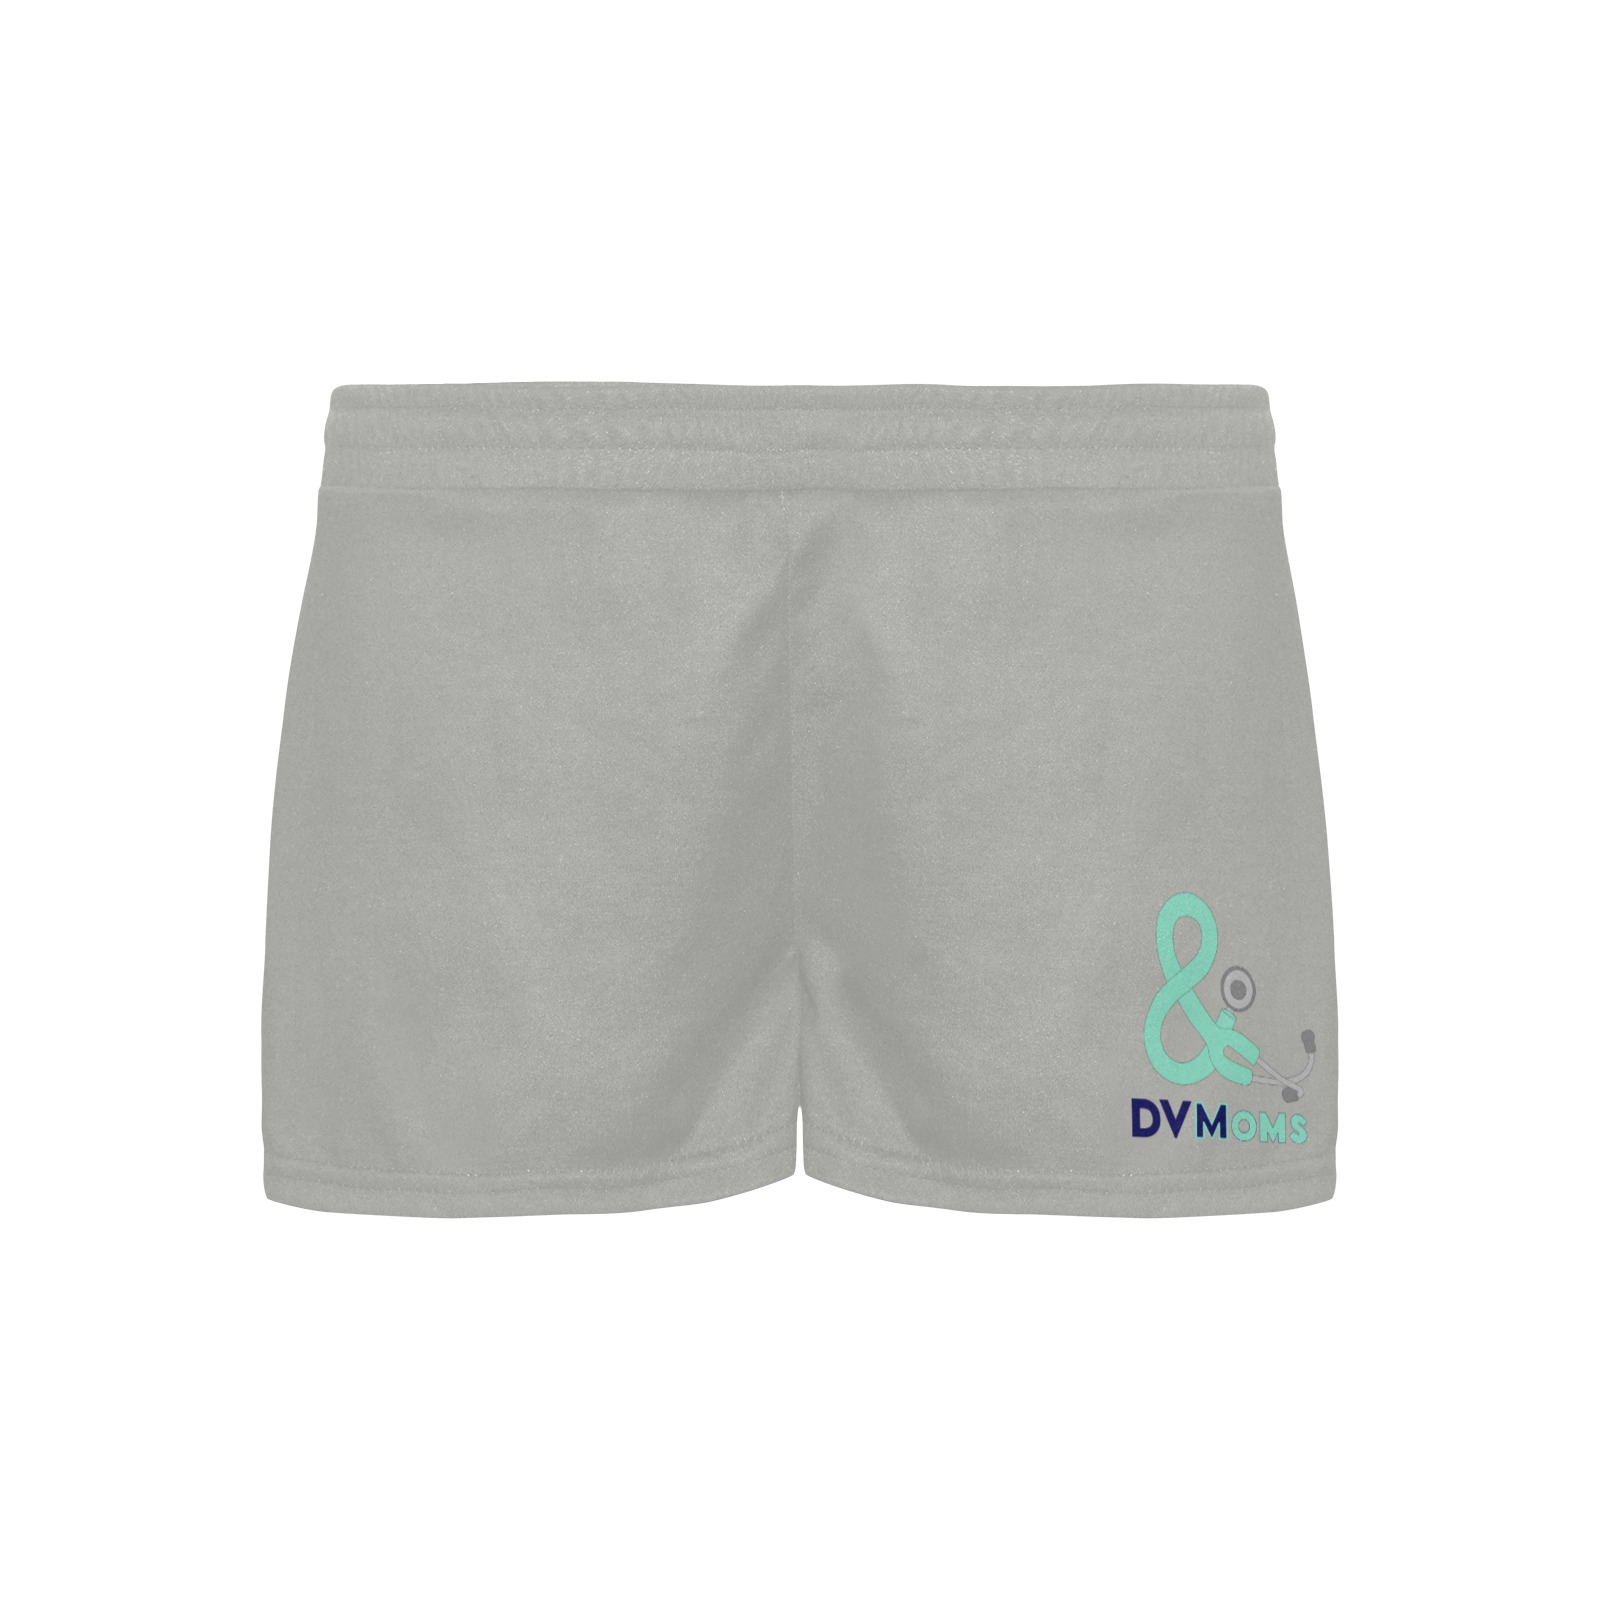 Shorts gray with single logo Women's Pajama Shorts